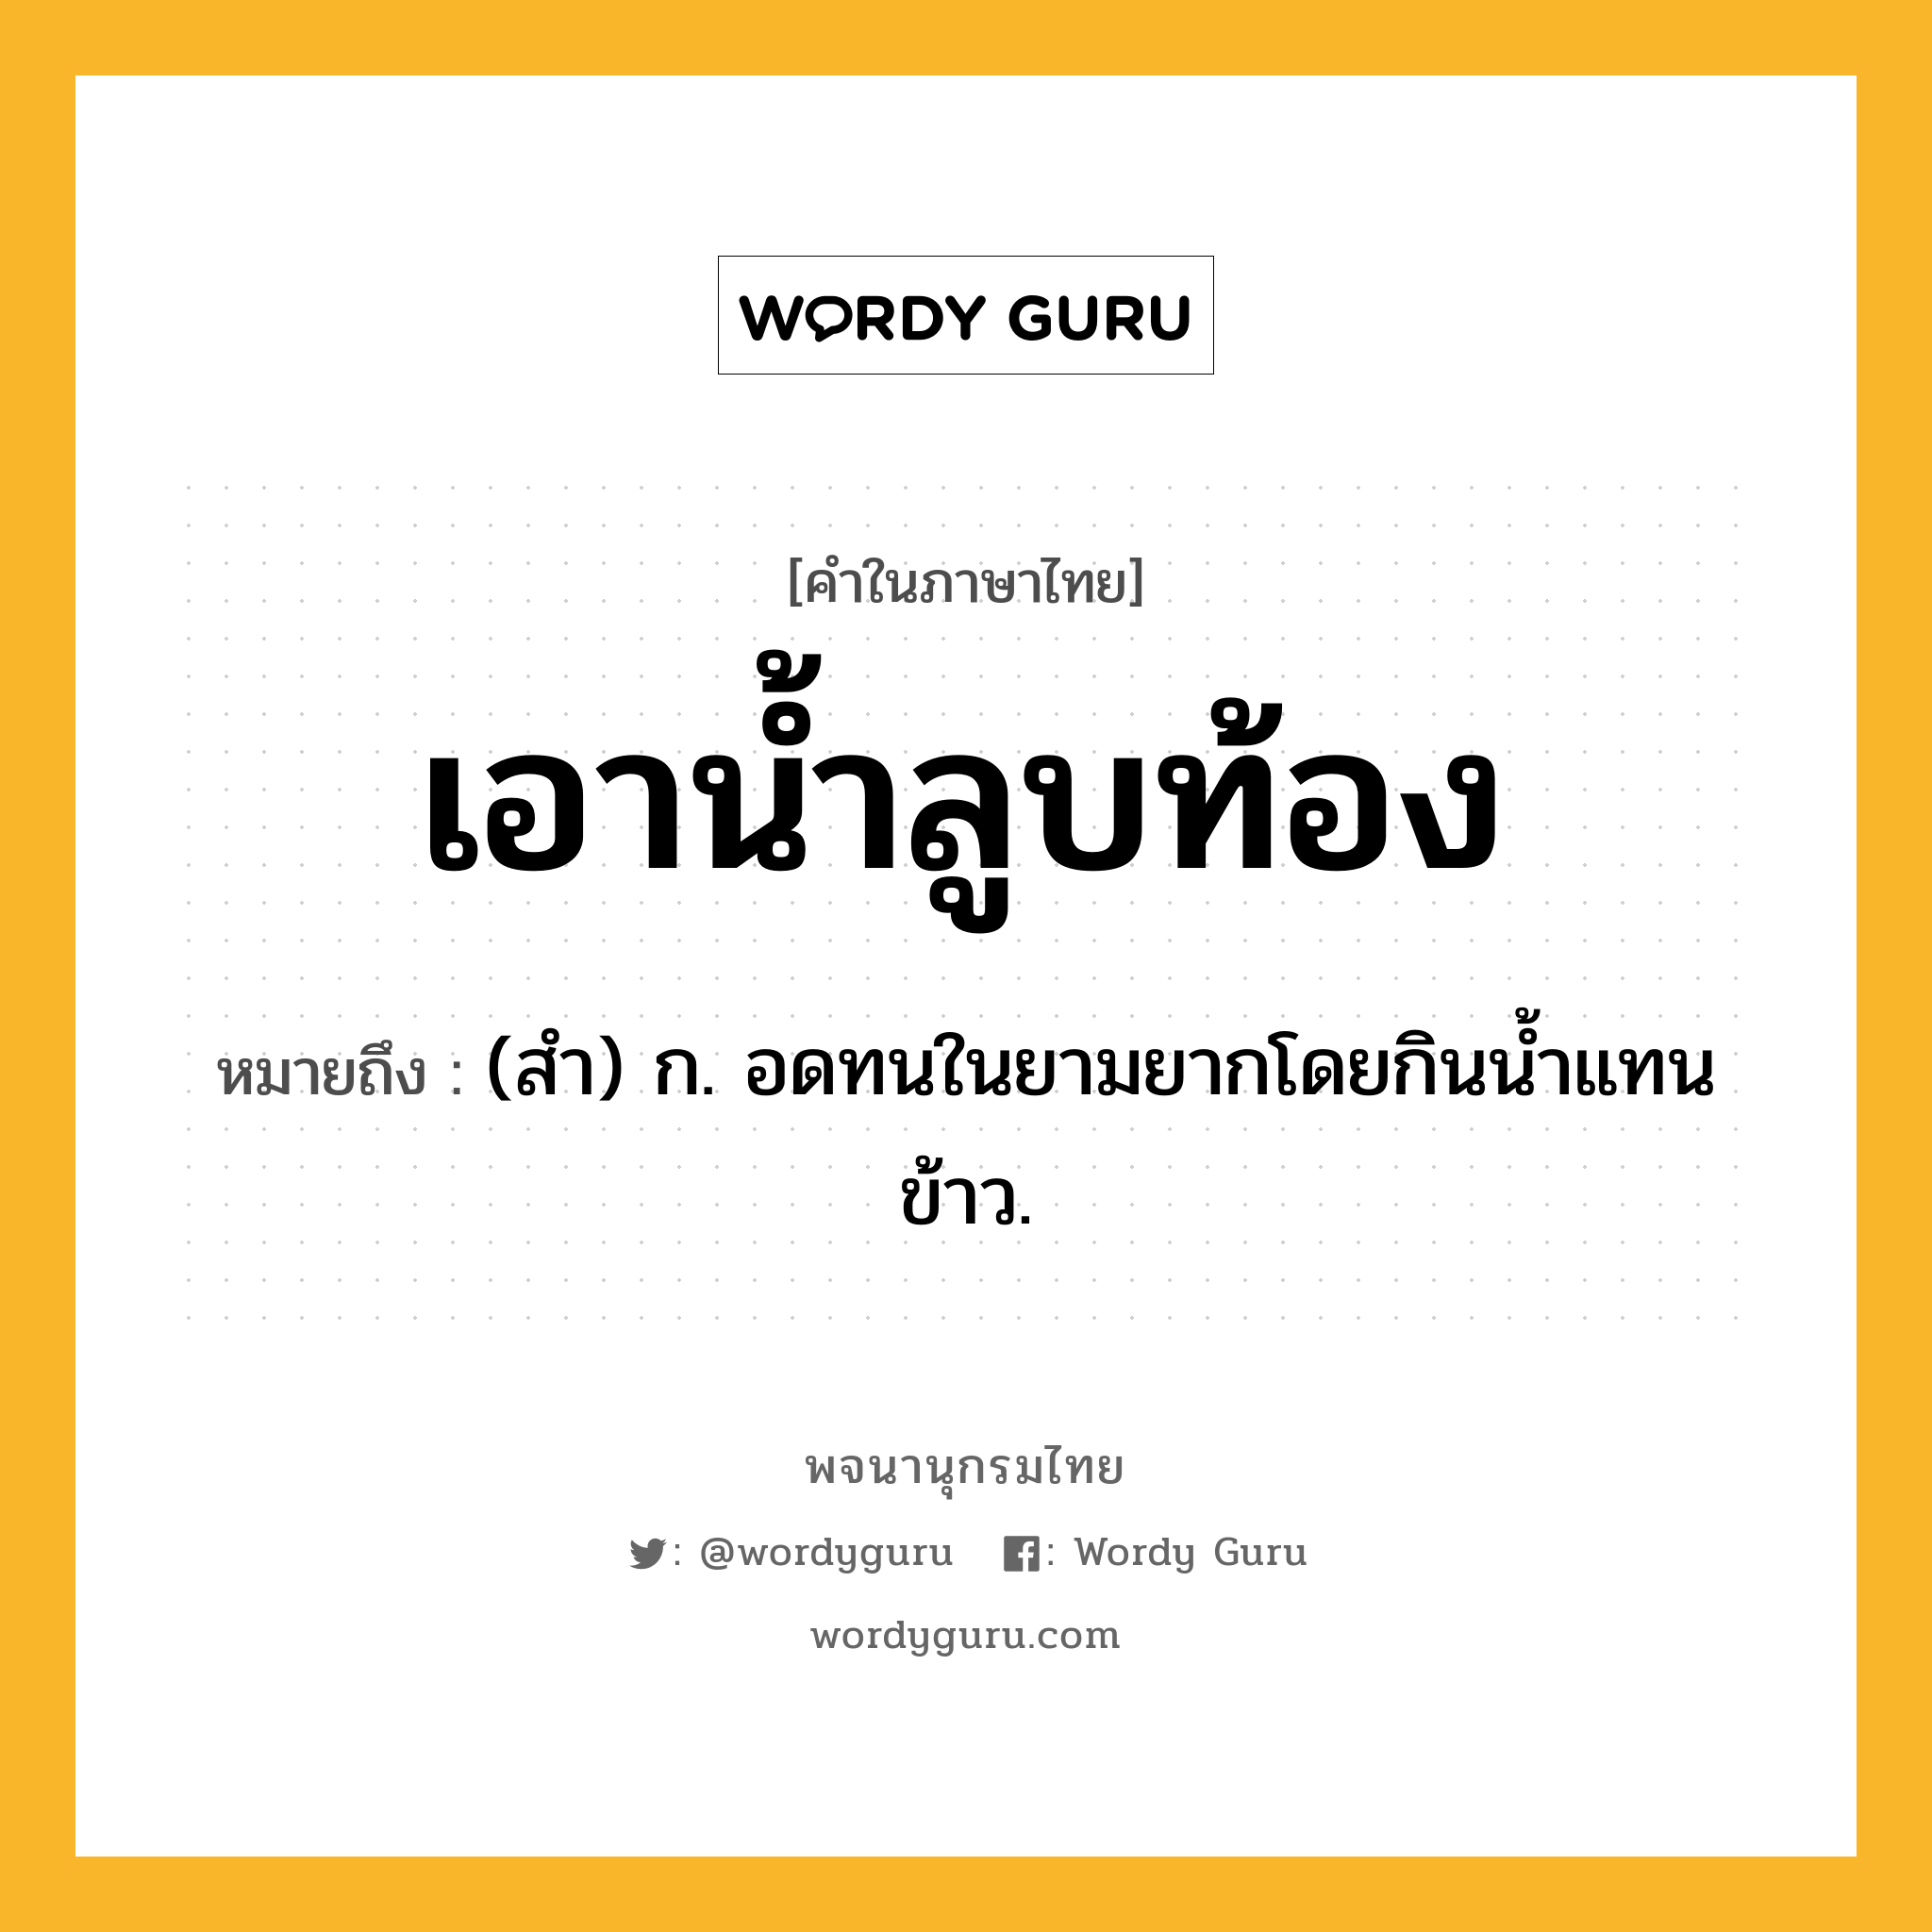 เอาน้ำลูบท้อง ความหมาย หมายถึงอะไร?, คำในภาษาไทย เอาน้ำลูบท้อง หมายถึง (สํา) ก. อดทนในยามยากโดยกินน้ำแทนข้าว.